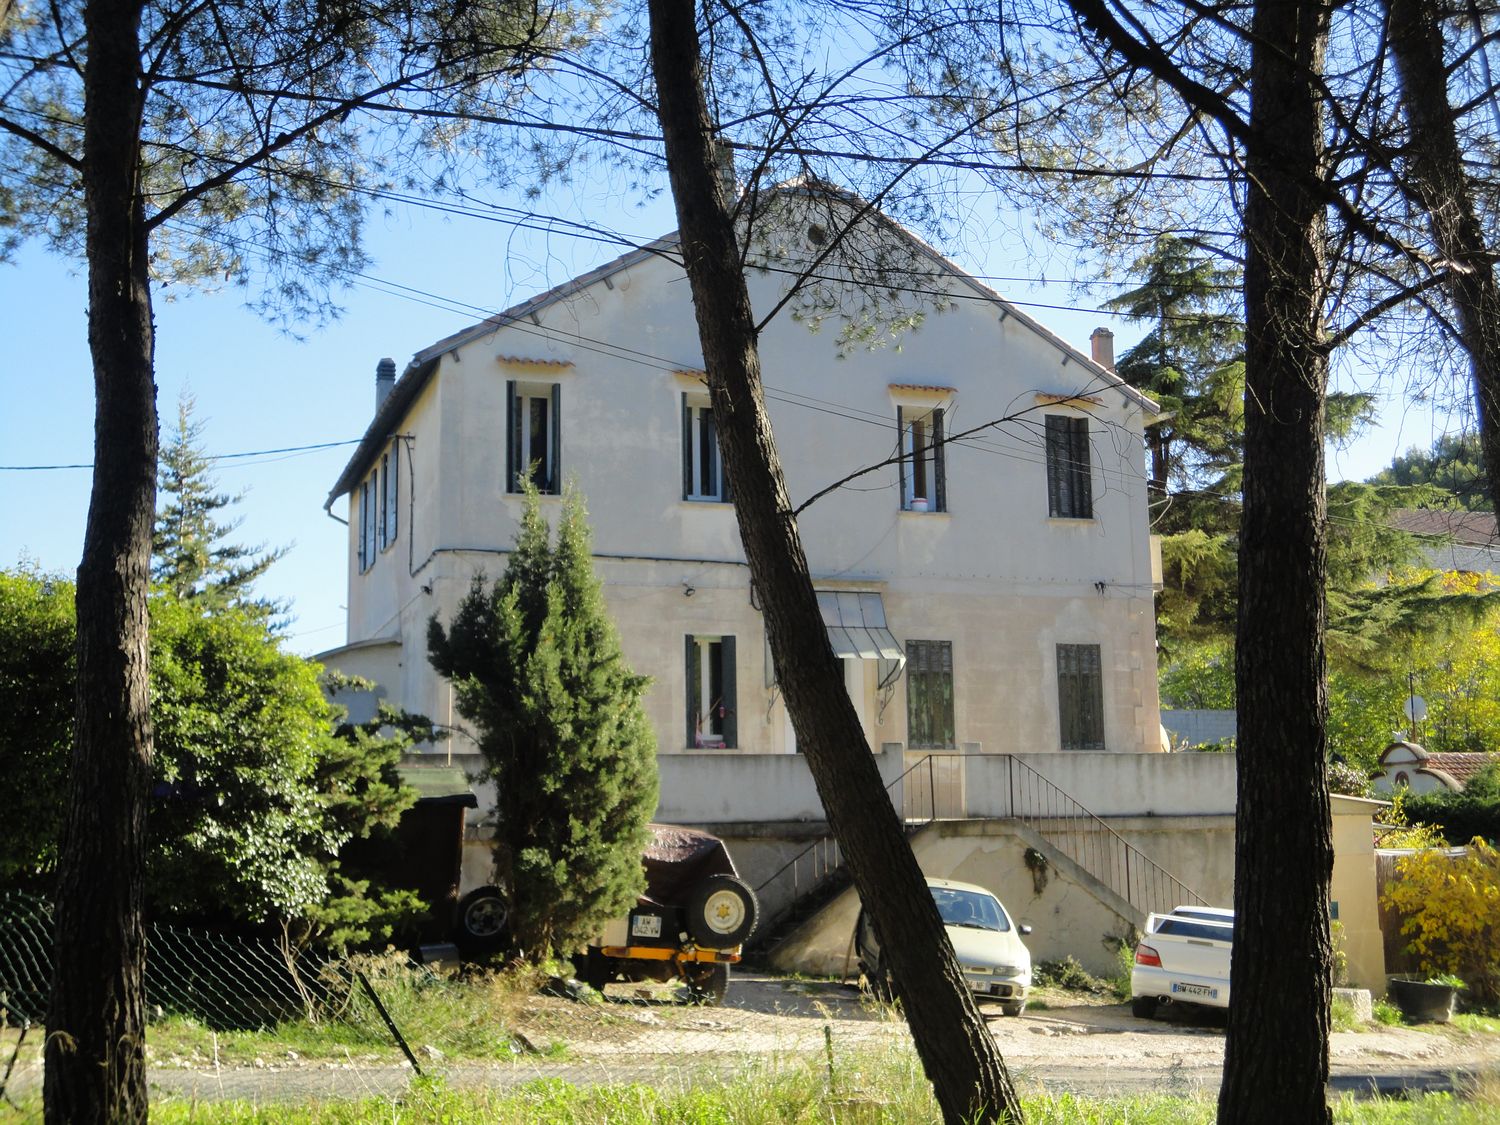 Vente immeuble de 9 logements loués Roquefort la Bédoule